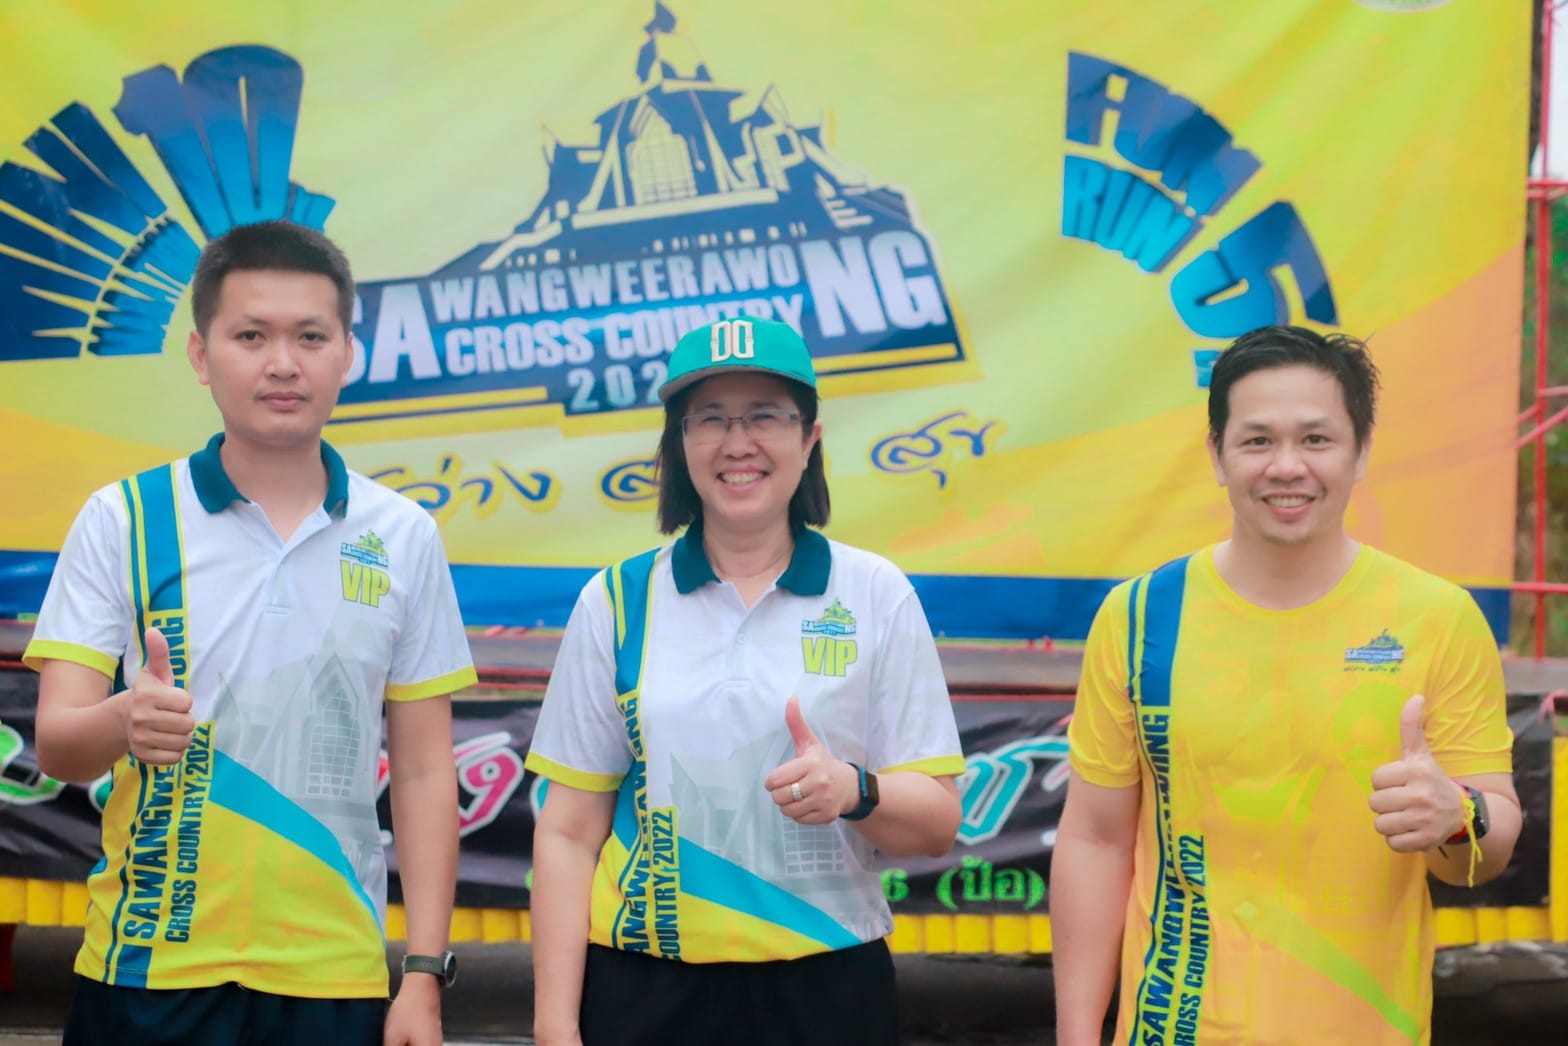 พิธีเปิด การแข่งขันเดิน-วิ่งการกุศลครบรอบ 30 ปี สว่างวีระวงศ์ Sawangweerawong Cross Country 2022 ณ โรงเรียนสว่างวีระวงศ์